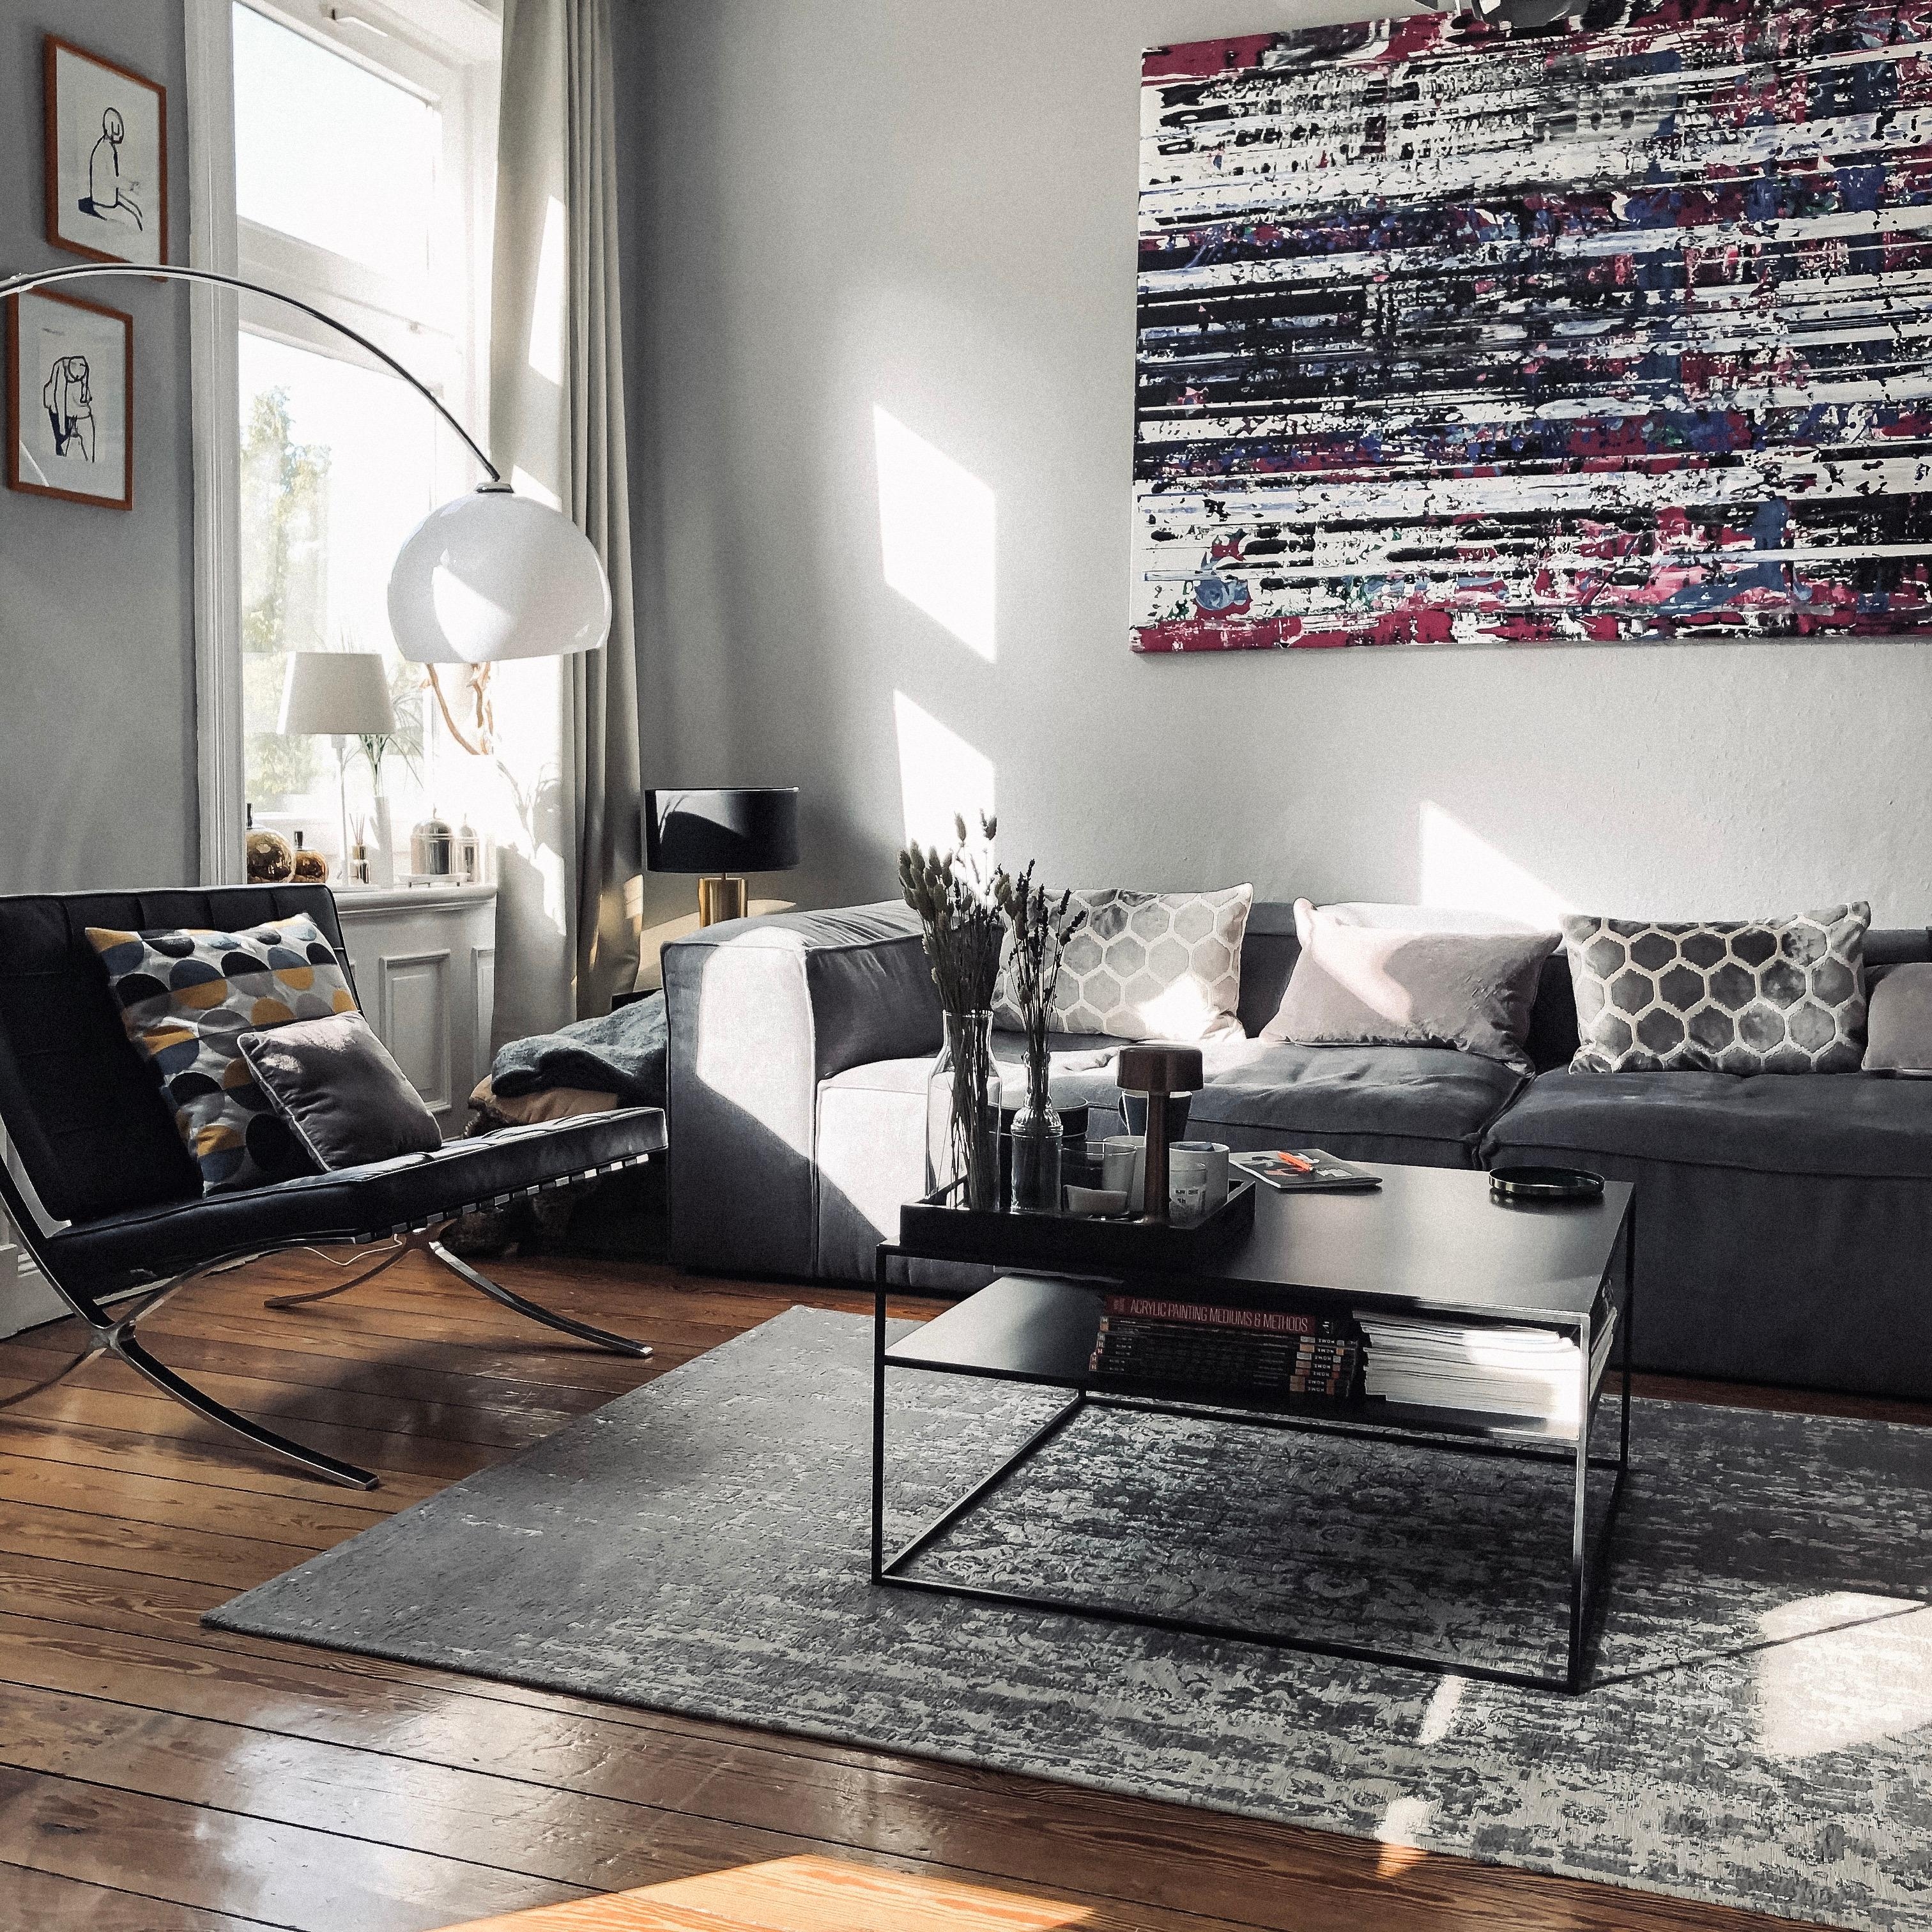 Netflix & Chill #couchstyle #interior #wohnzimmer #couchtisch #interieur #kunst #dielen